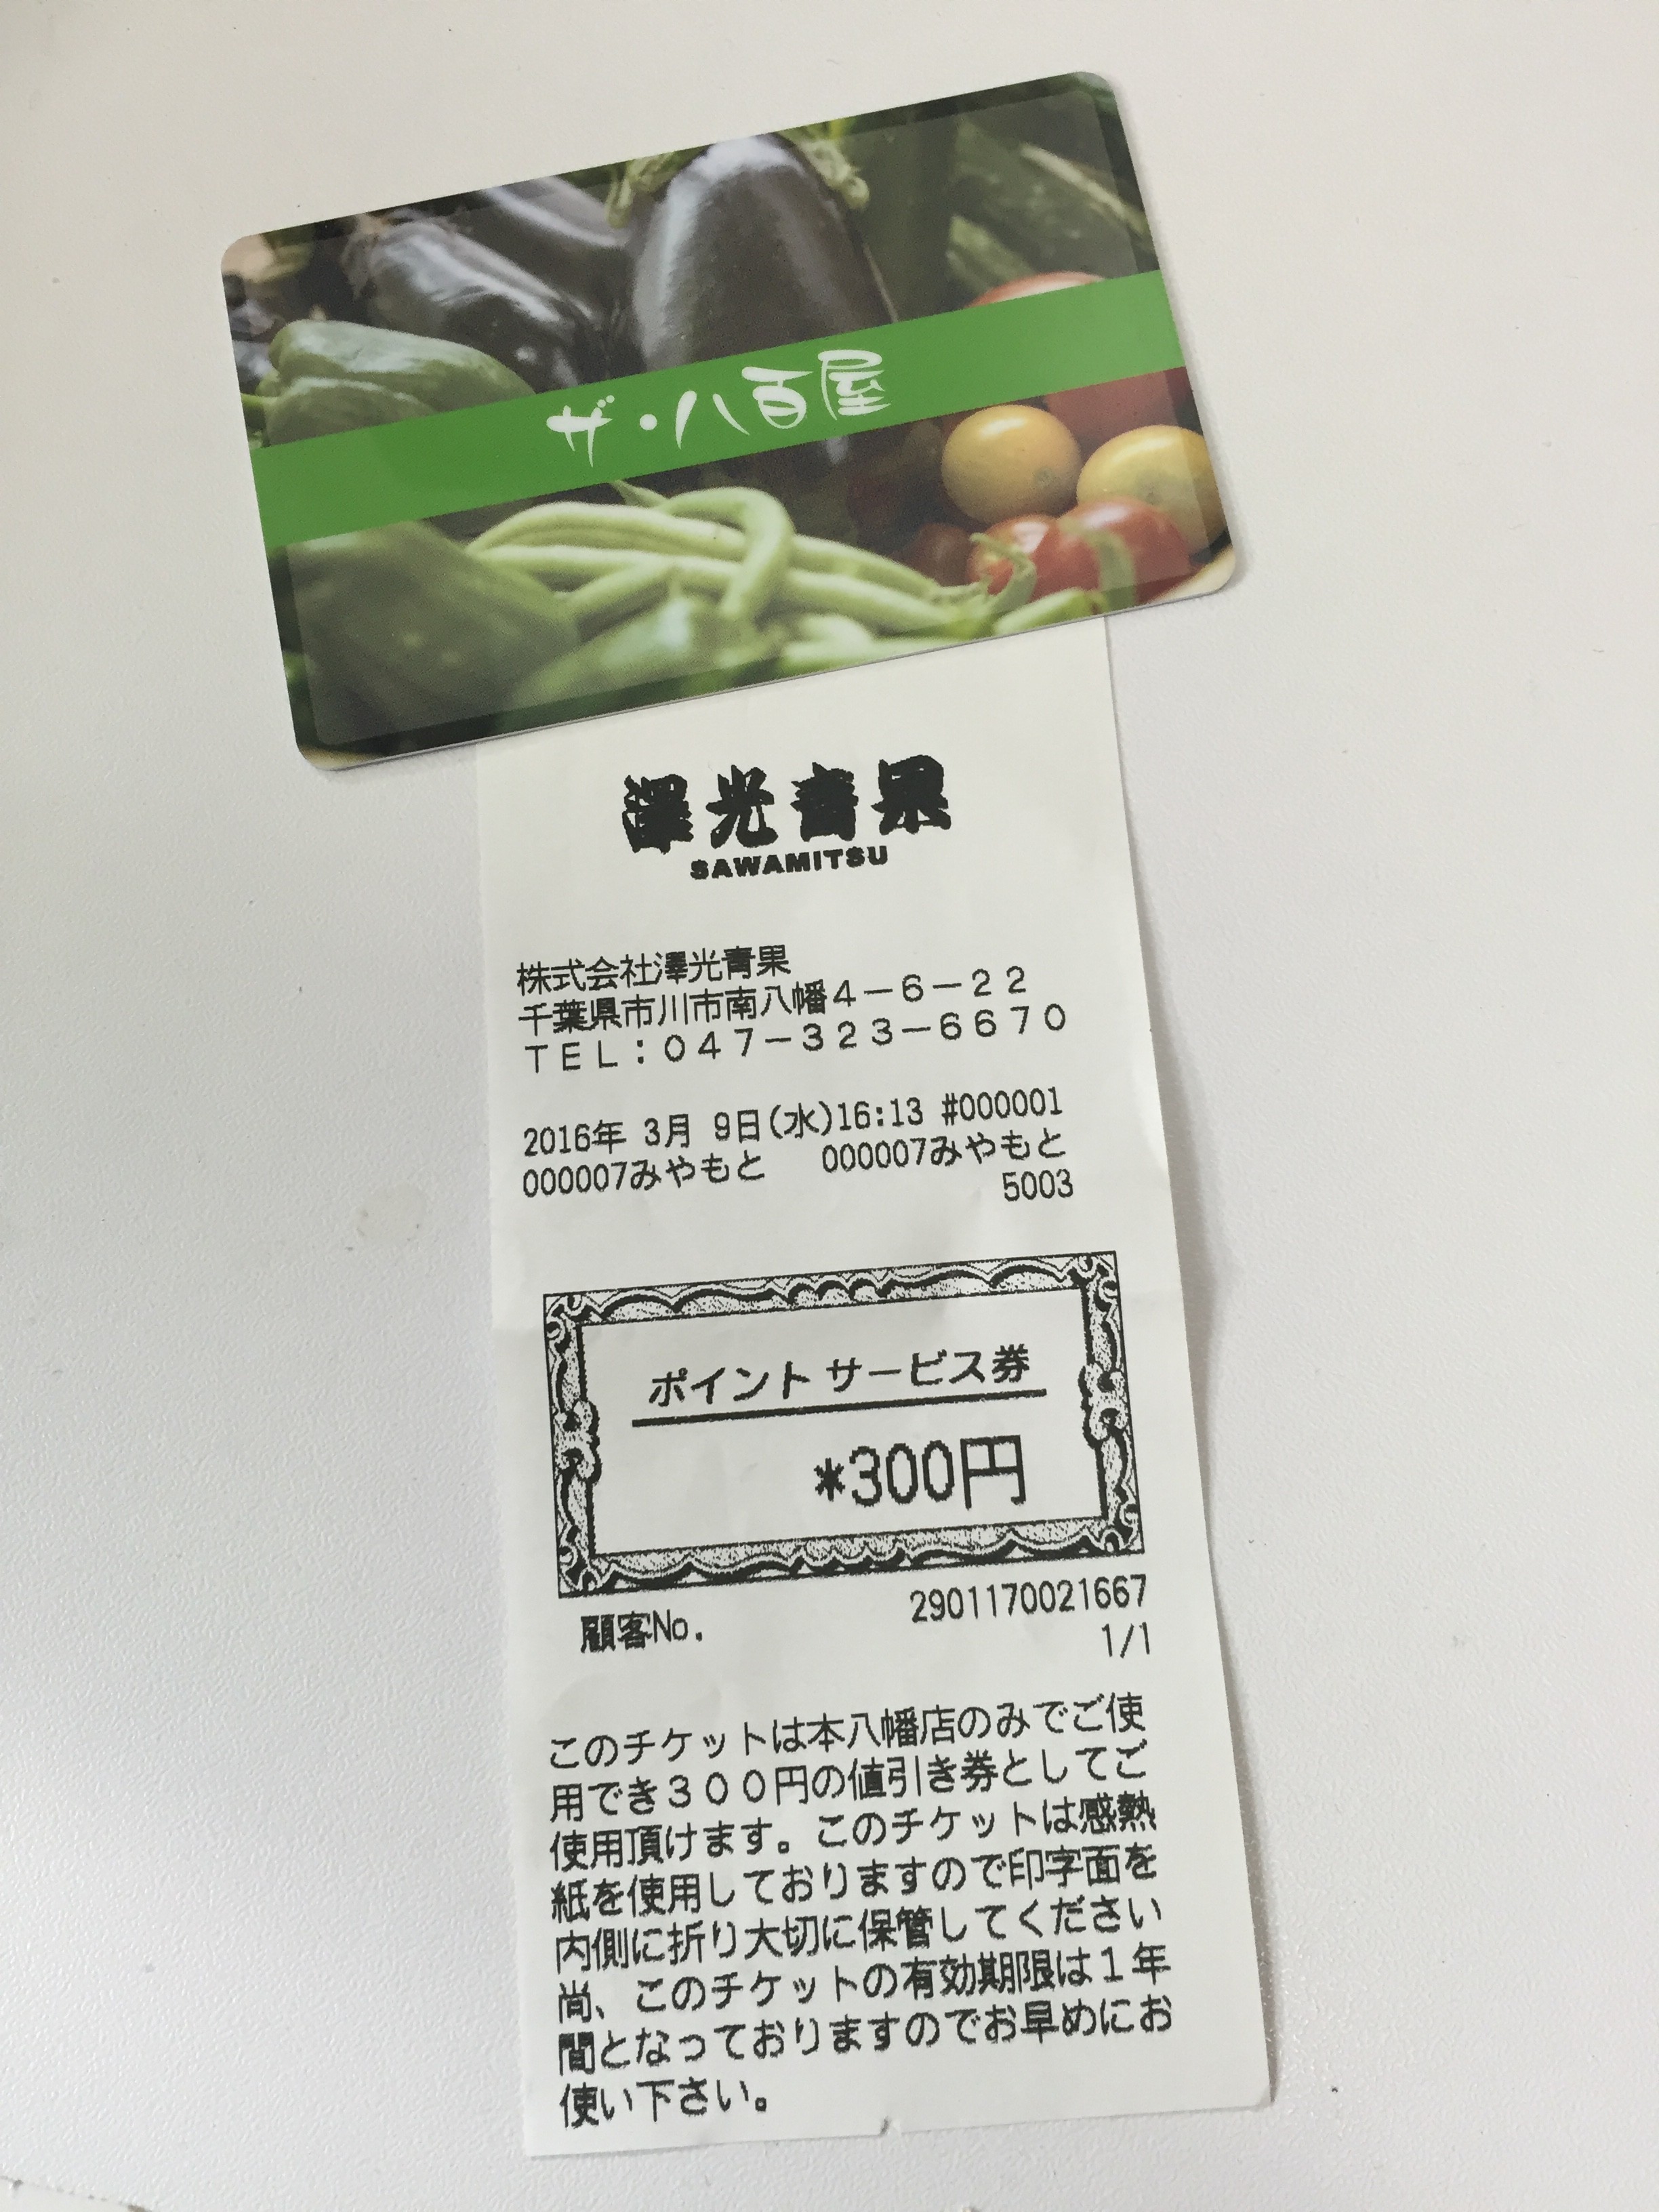 うれしい300円のポイント券ヽ(^。^)ノ